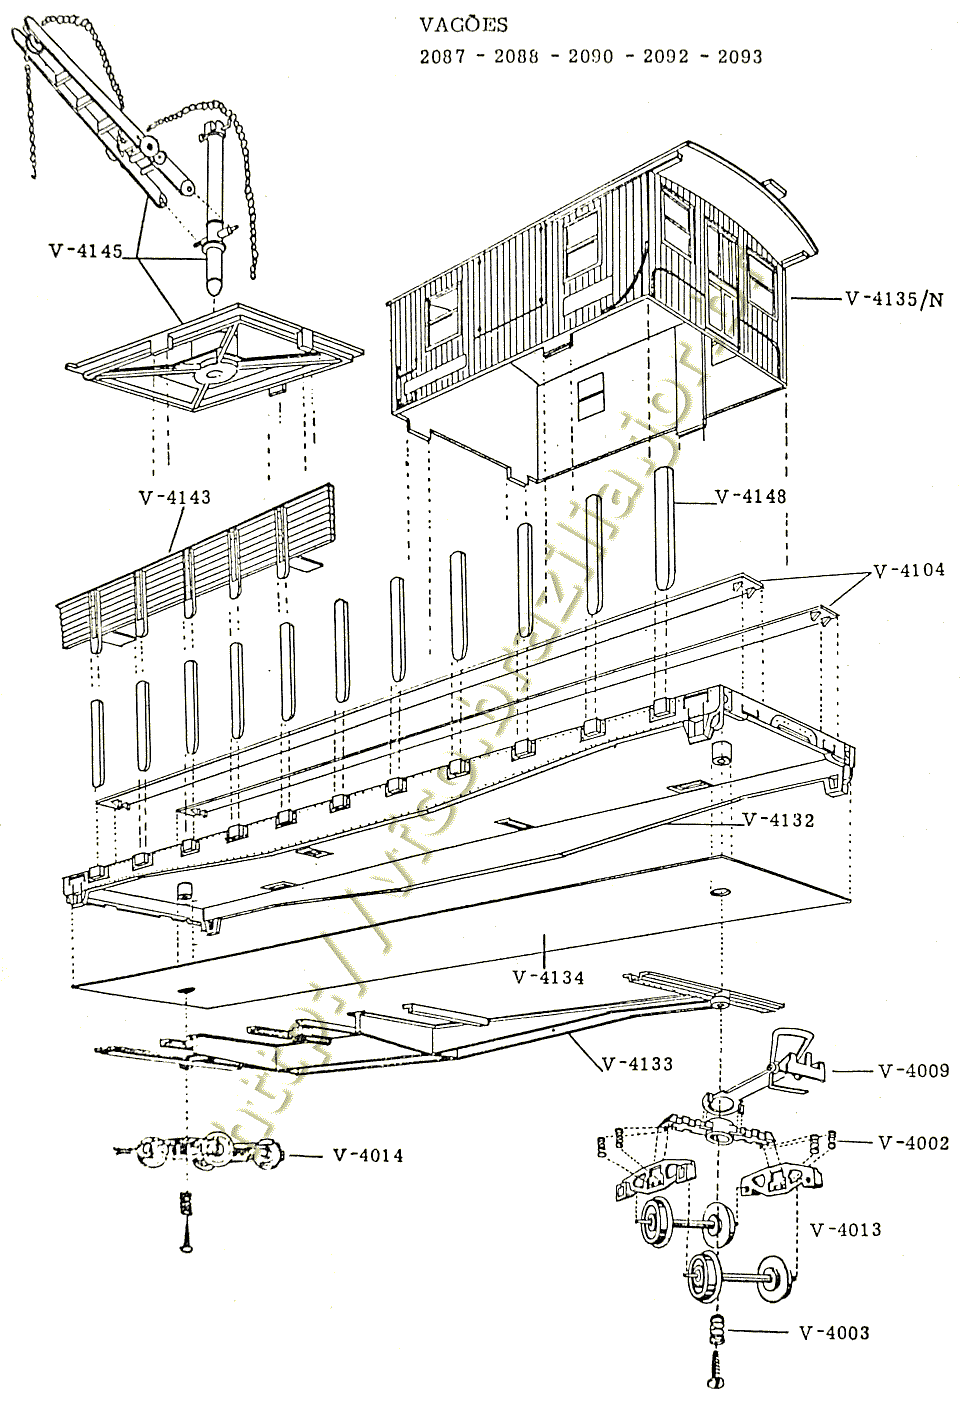 Diagrama de montagem e peças de reposição dos vagões prancha, caboose e guindaste "longos" Atma